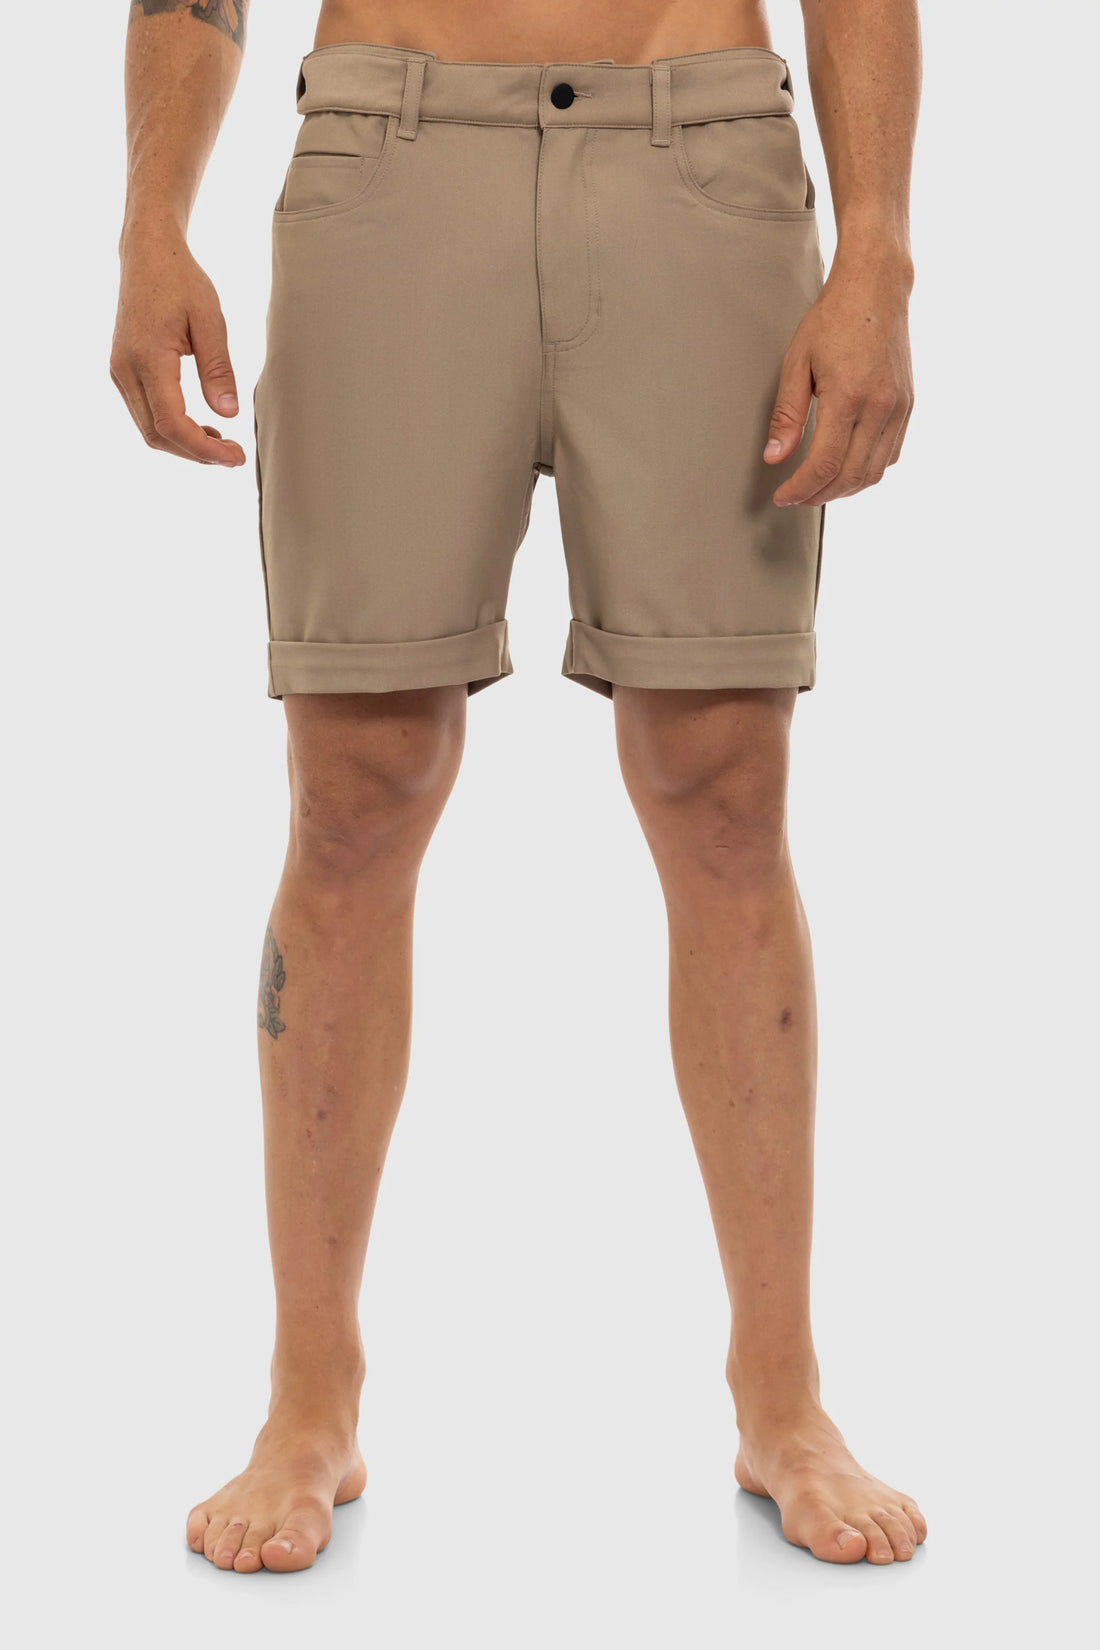 Vital Shorts